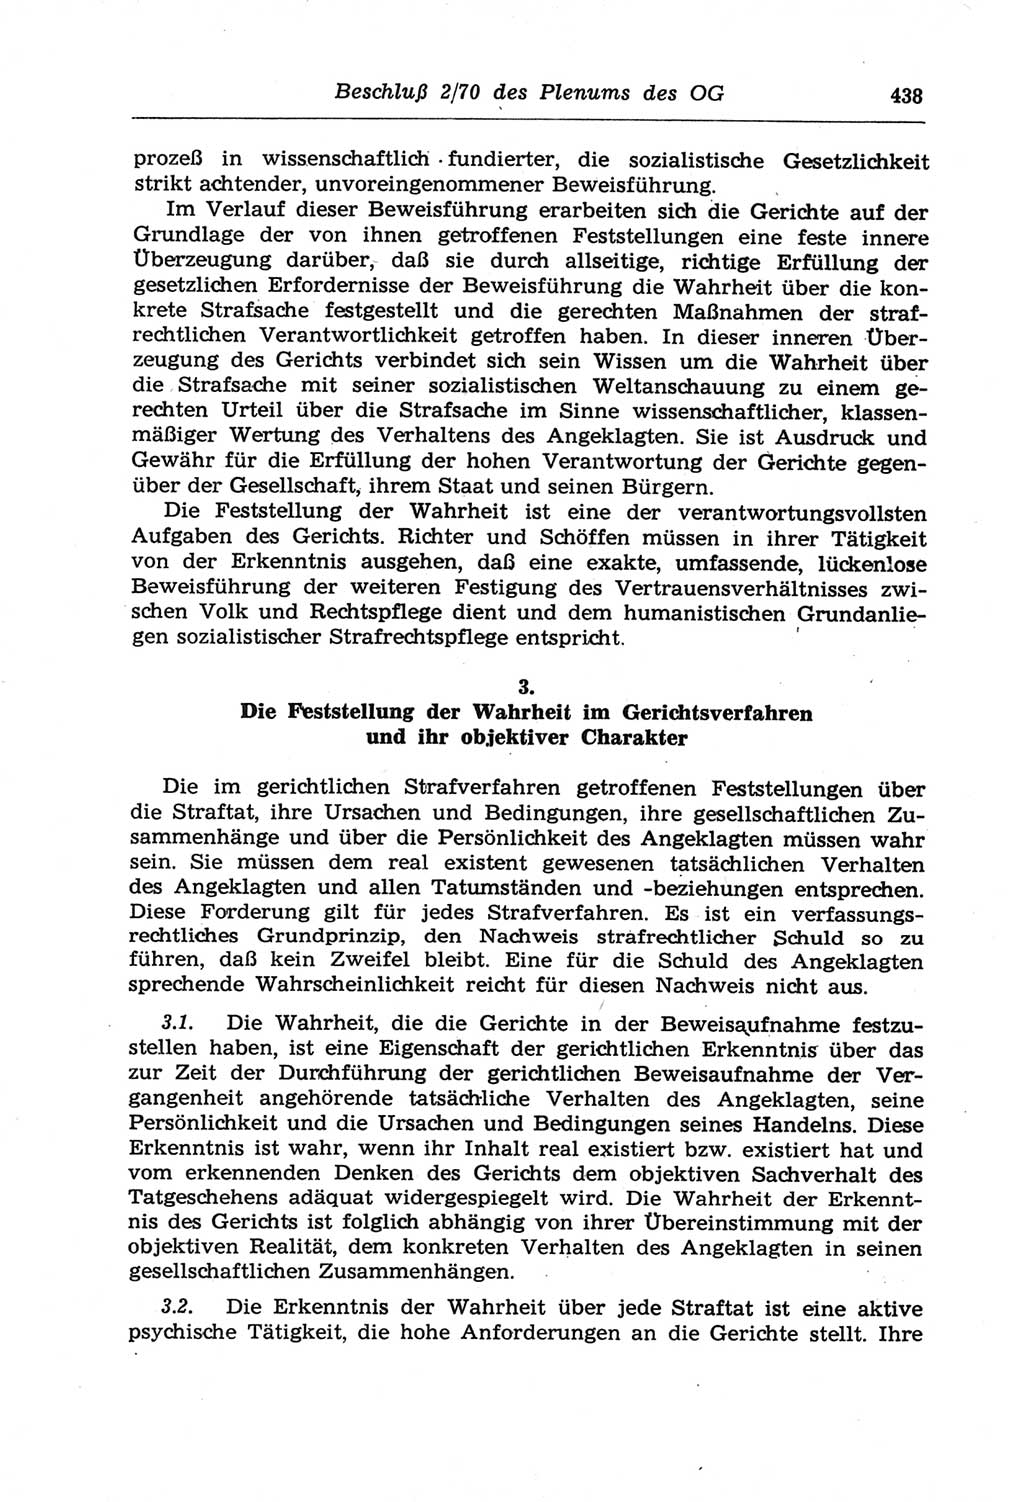 Strafprozeßordnung (StPO) der Deutschen Demokratischen Republik (DDR) und angrenzende Gesetze und Bestimmungen 1968, Seite 438 (StPO Ges. Bstgn. DDR 1968, S. 438)